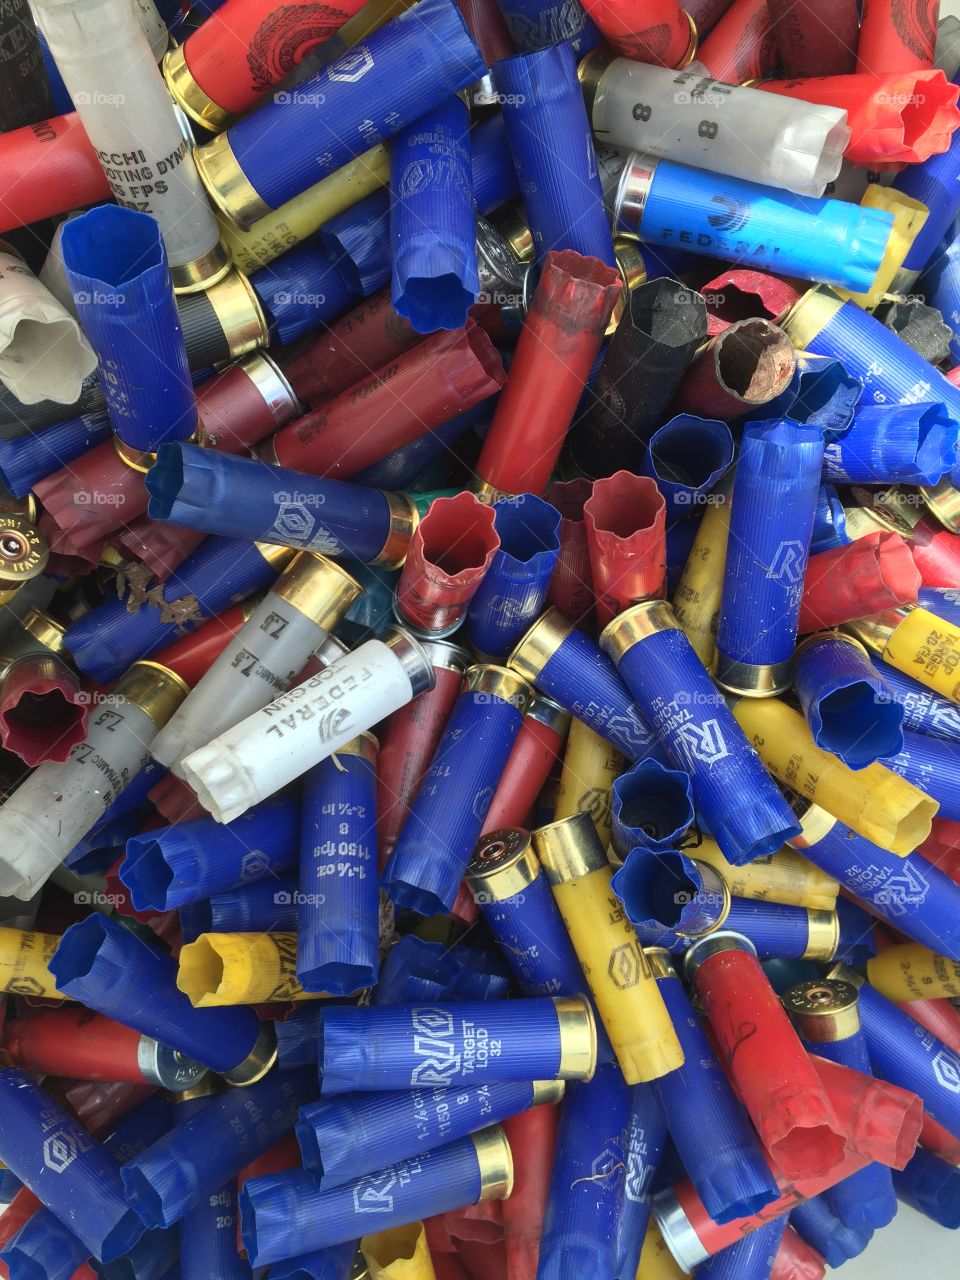 Colors of the shotgun shells